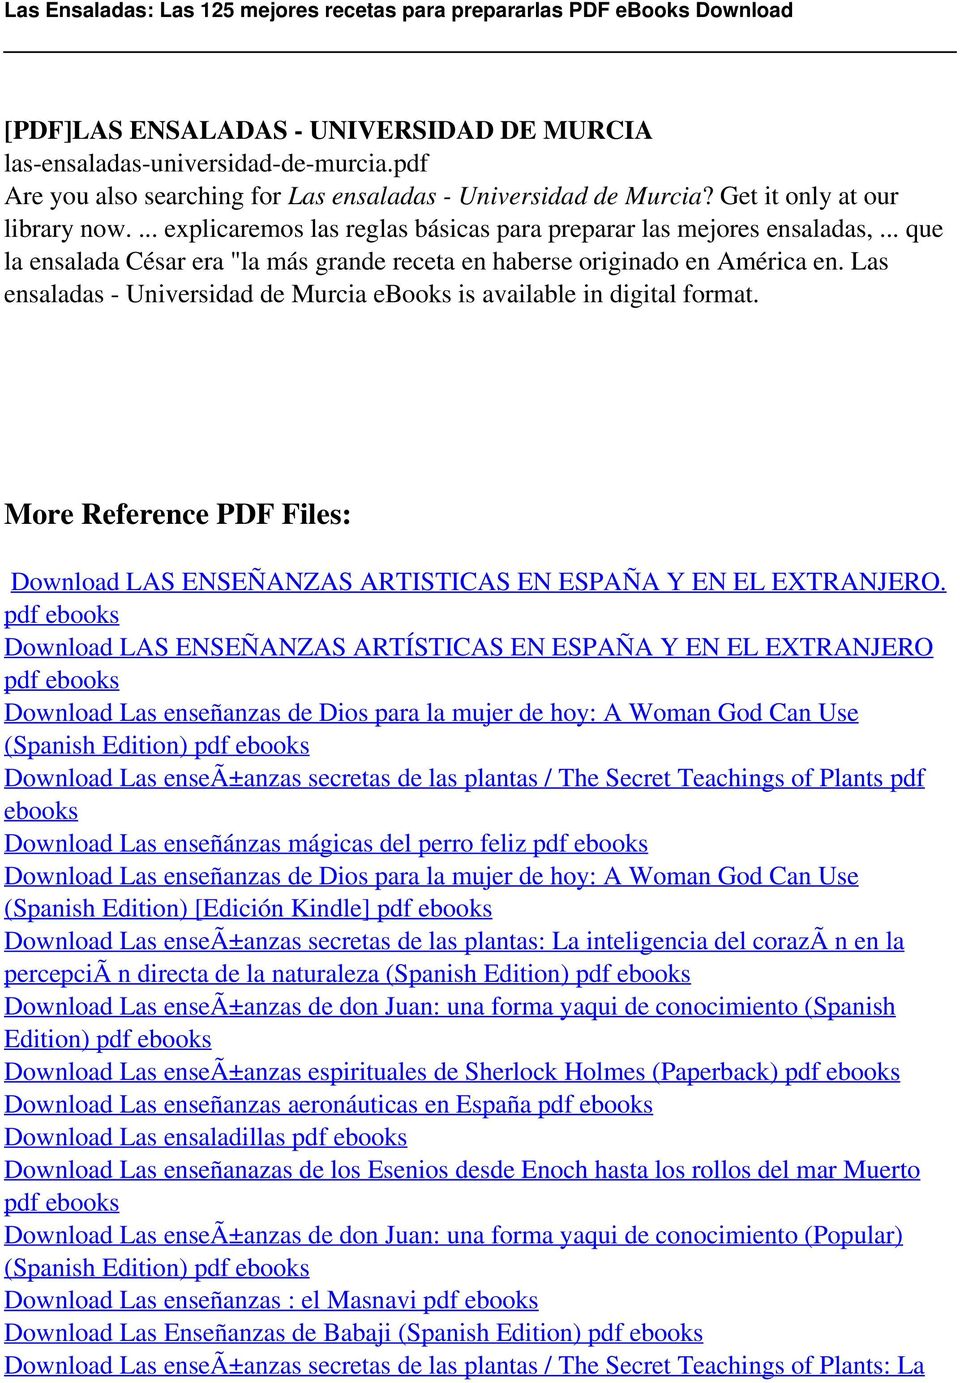 Las ensaladas - Universidad de Murcia ebooks is More Reference PDF Files: Download LAS ENSEÑANZAS ARTISTICAS EN ESPAÑA Y EN EL EXTRANJERO.